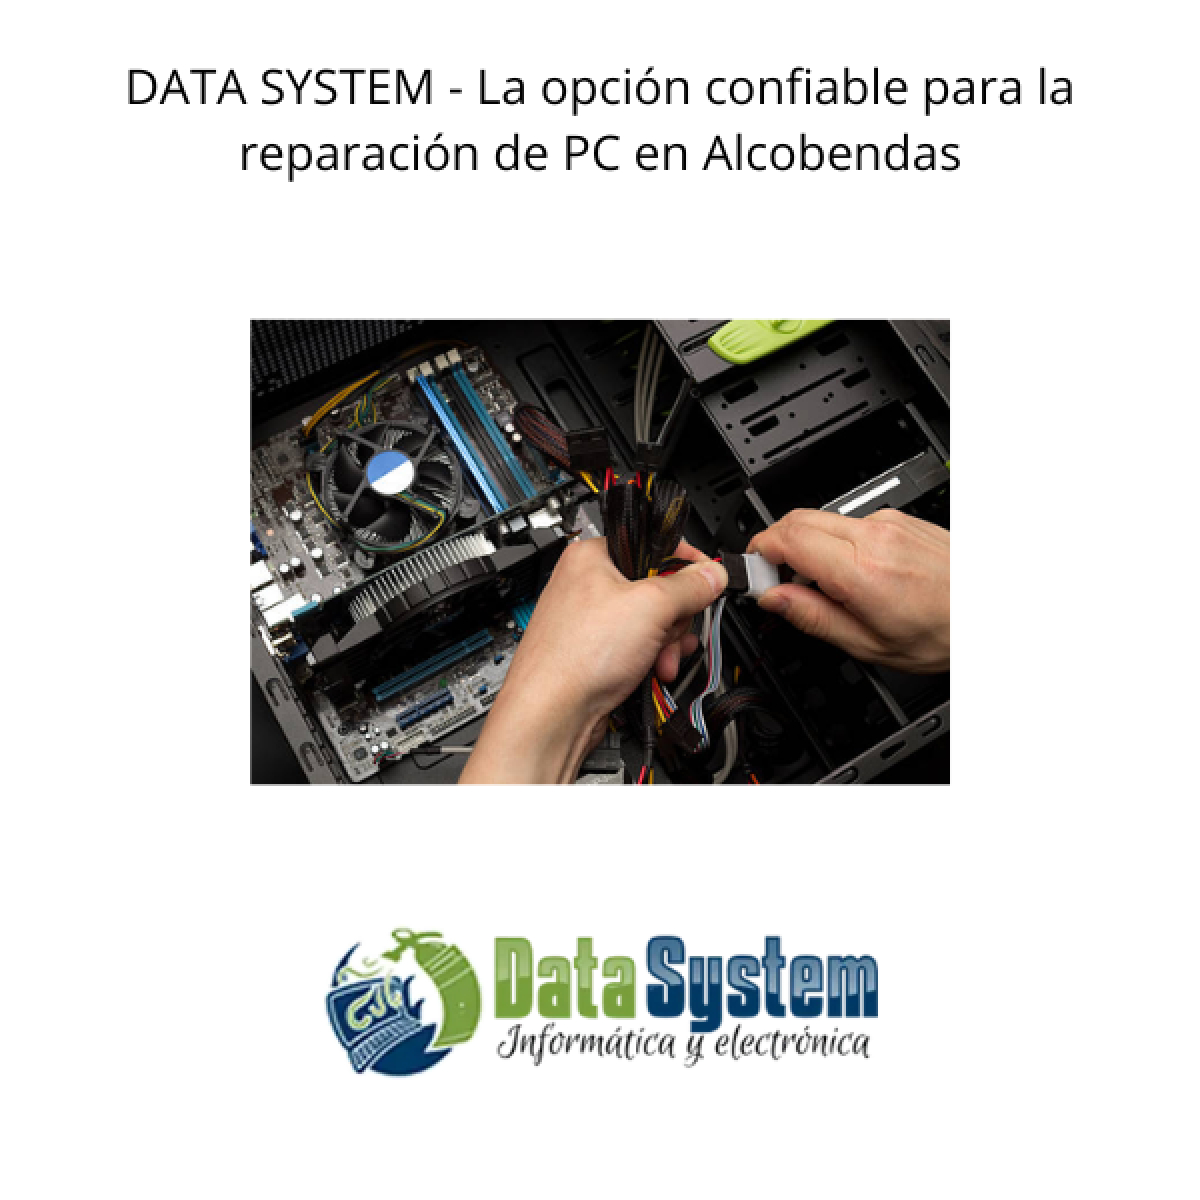 DATA SYSTEM - La opción confiable para la reparación de PC en Alcobendas